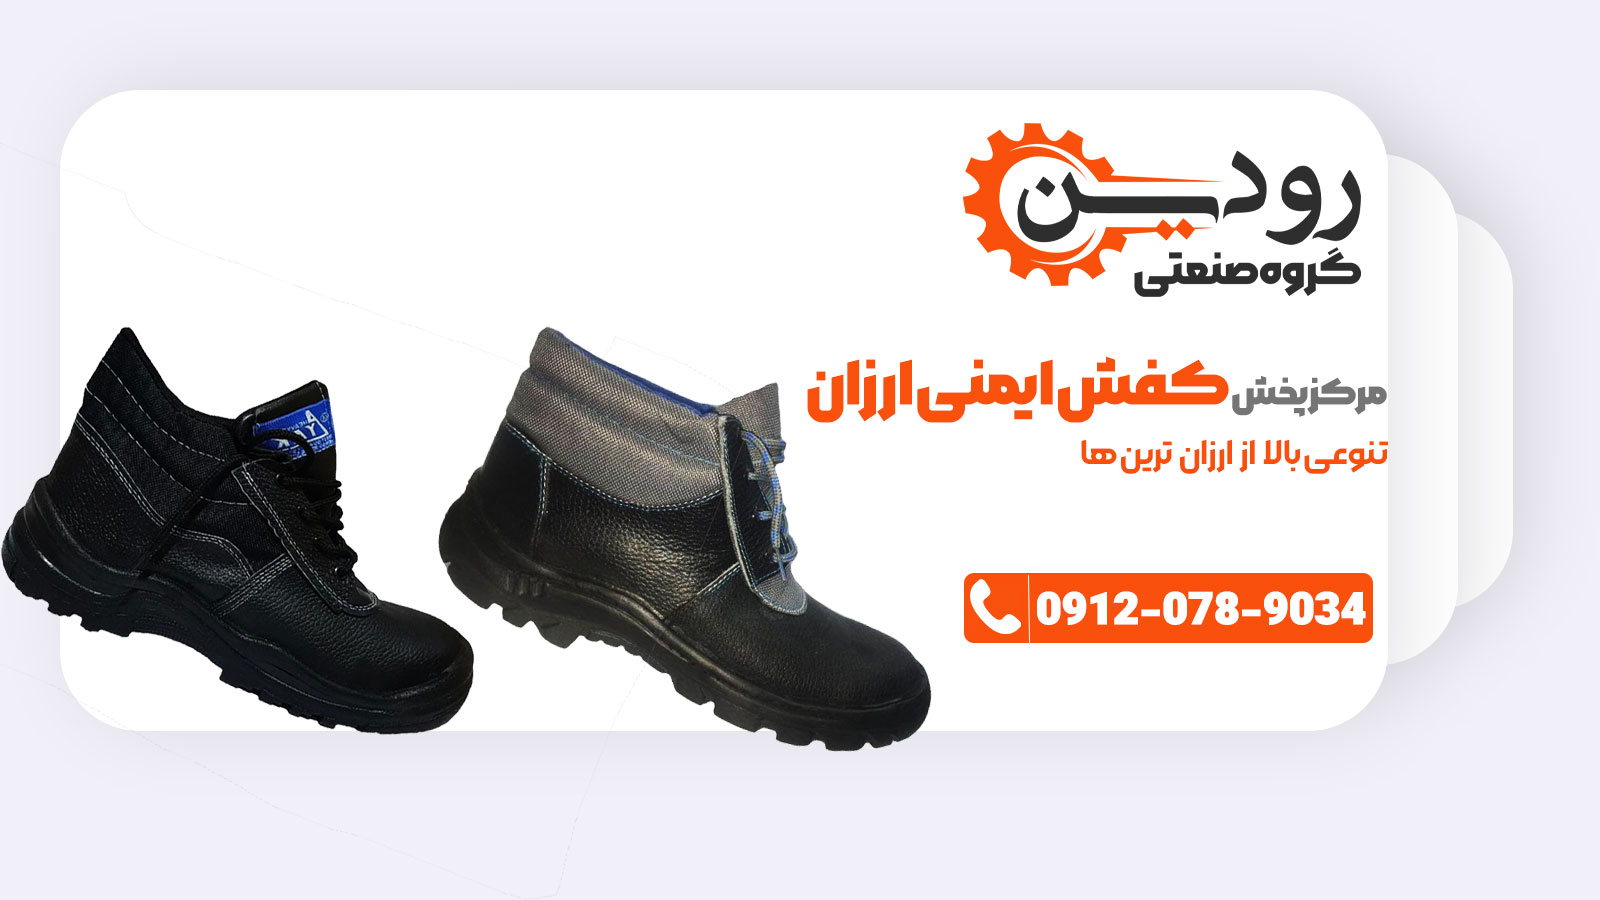 آدرس مرکز خرید کفش ایمنی تهران که قیمت ارزان دارد کجاست؟